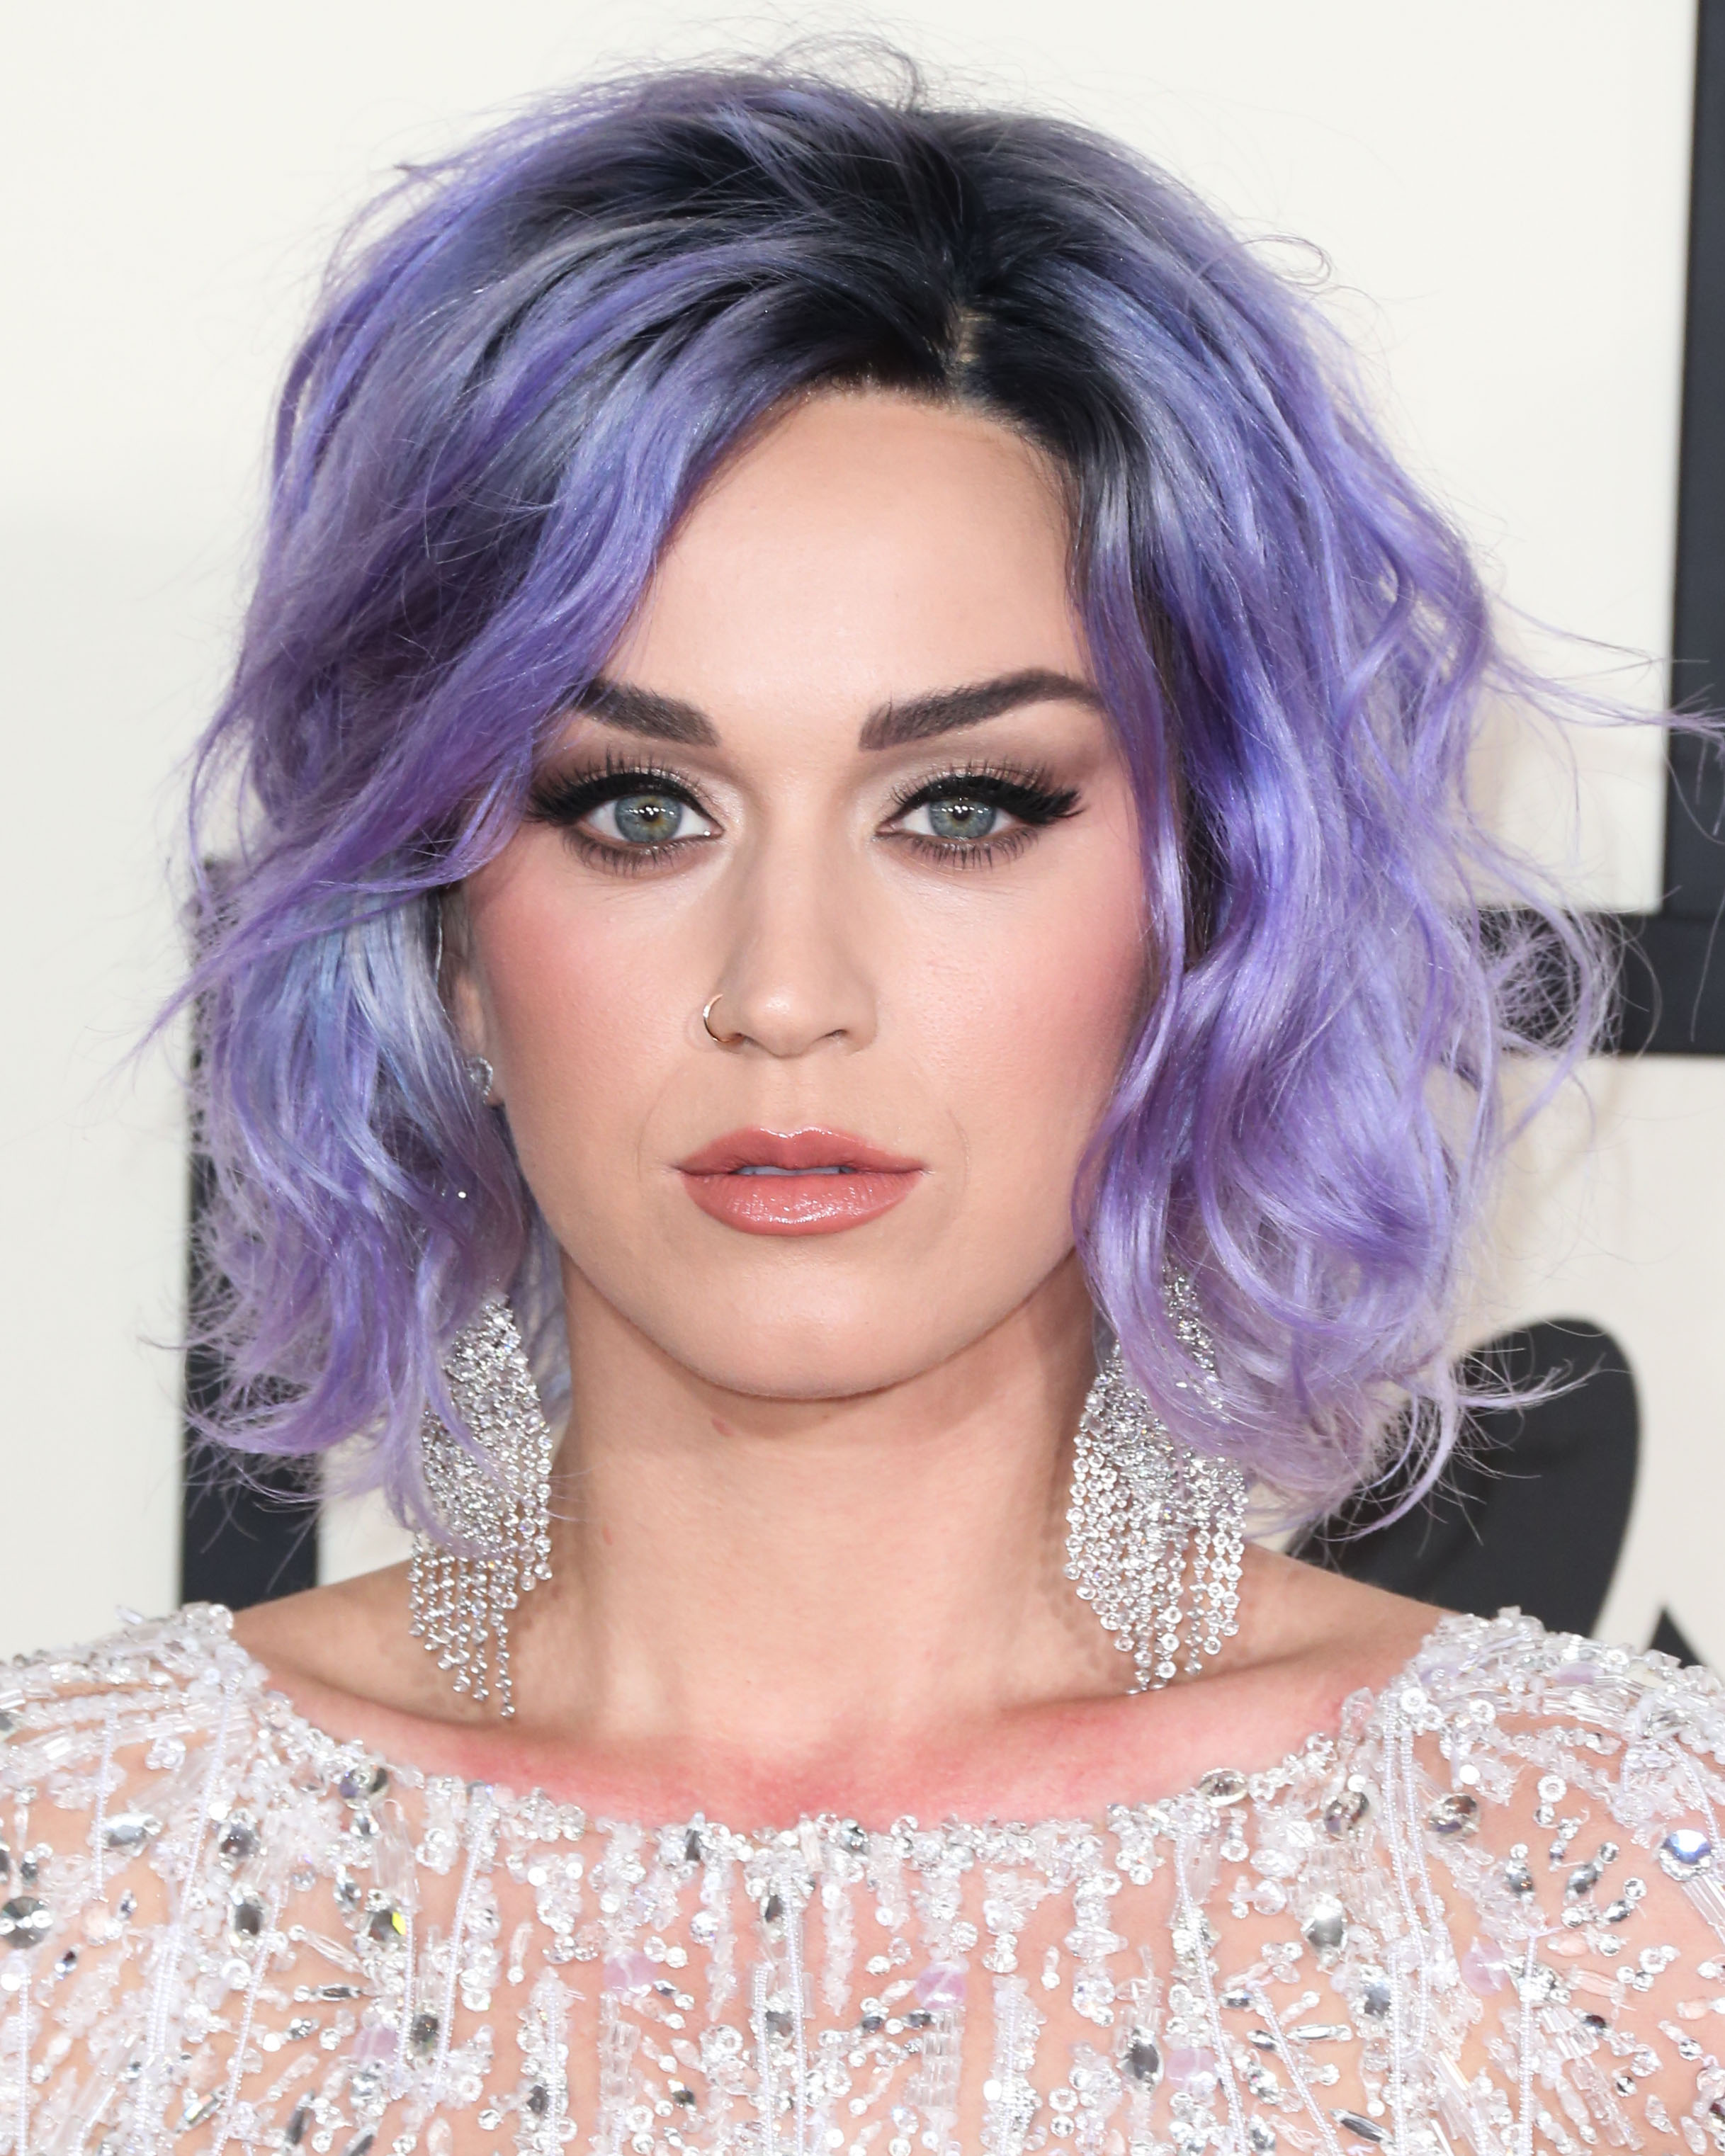 Katy Perry: μαντεύεις ποιο είναι το φυσικό χρώμα μαλλιών της;